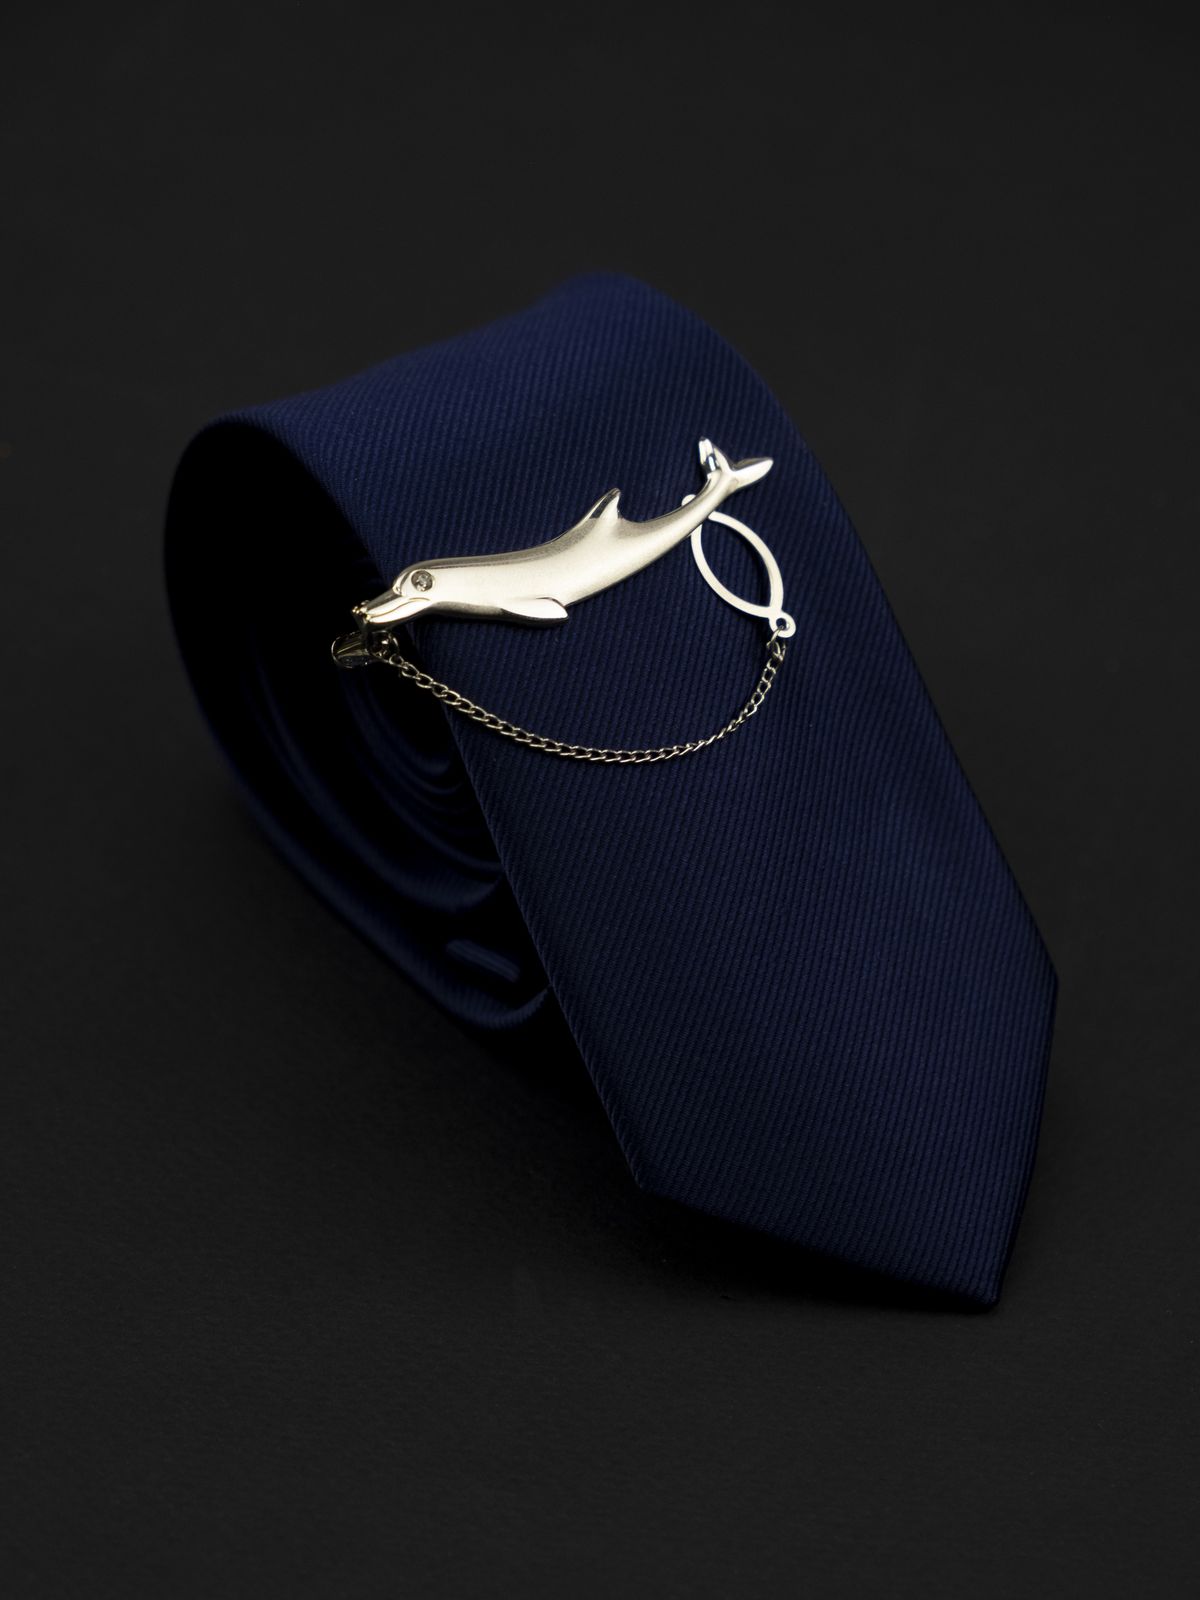 Зажим для галстука дельфин купить. Состав: Ювелирный сплав (alloy), Цвет: Серебристый, Габариты: 5,5 см. х 2 см., Вес: ; 